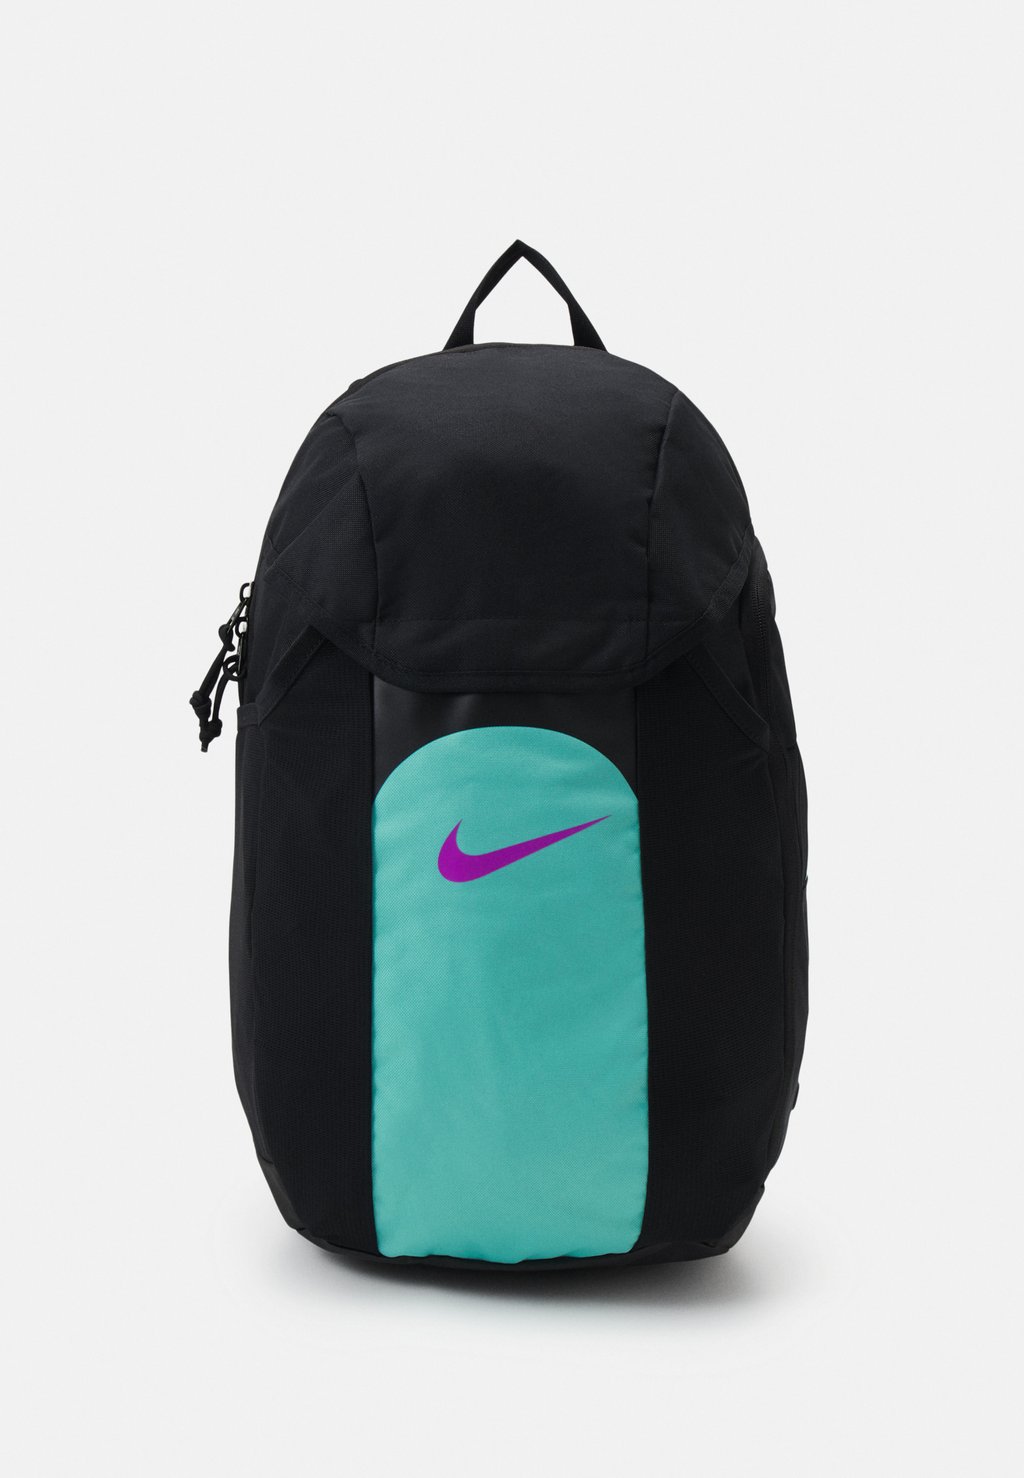 Рюкзак Academy Team Backpack Nike, цвет black/hyper turq/white